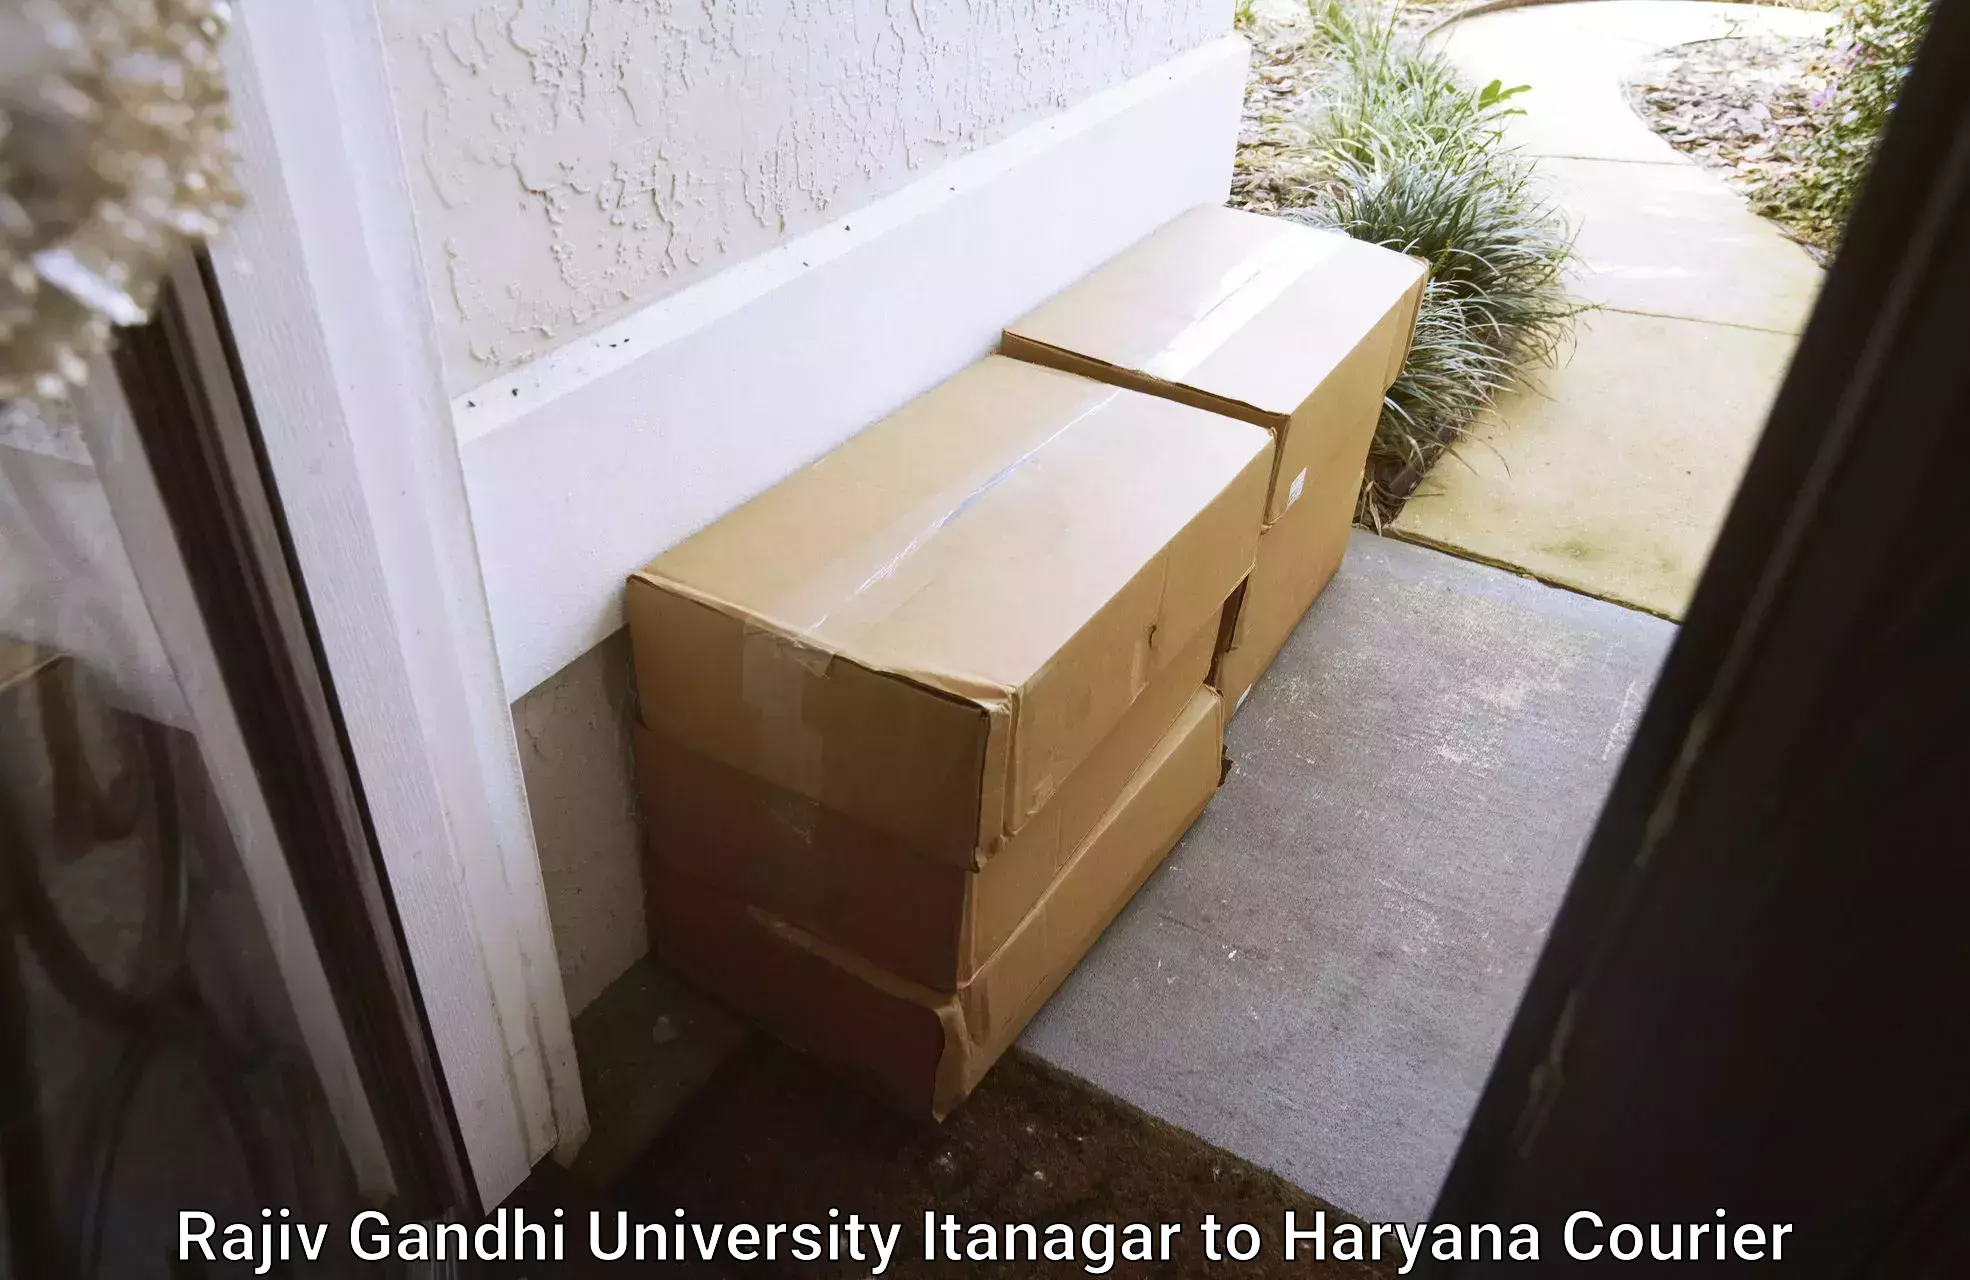 Efficient parcel tracking in Rajiv Gandhi University Itanagar to Hansi